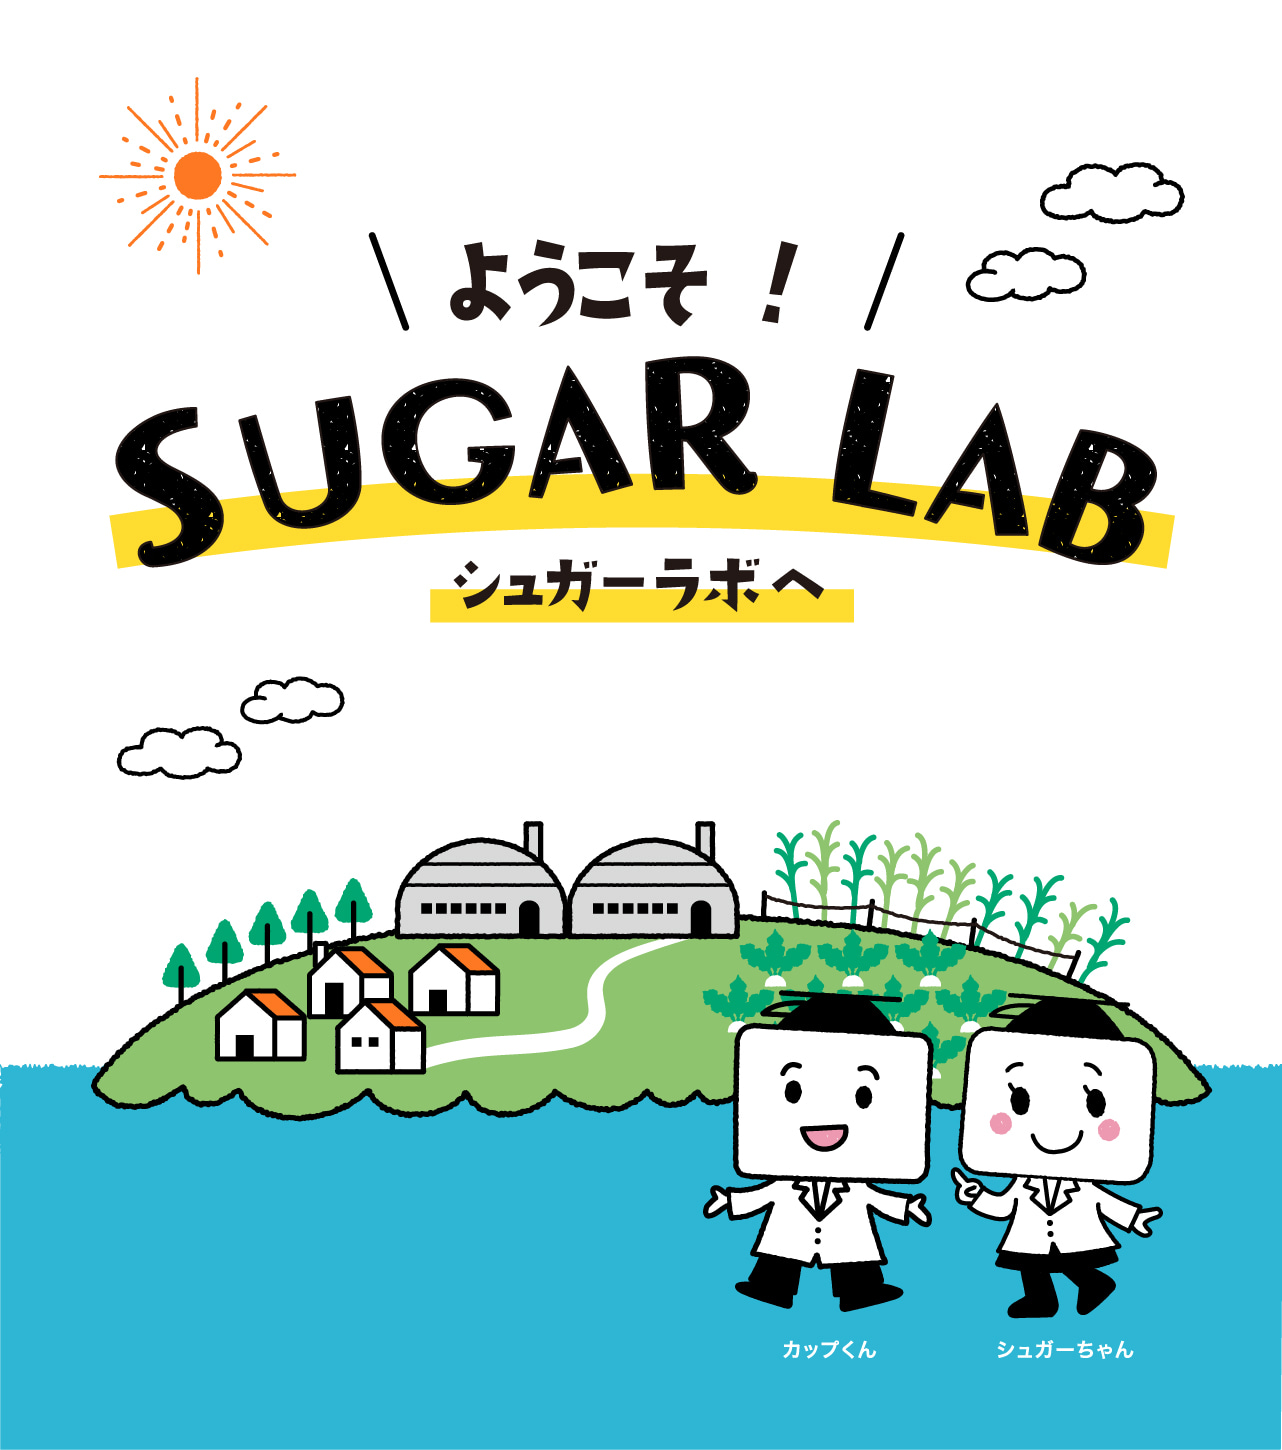 カップ印のお砂糖 日新製糖株式会社